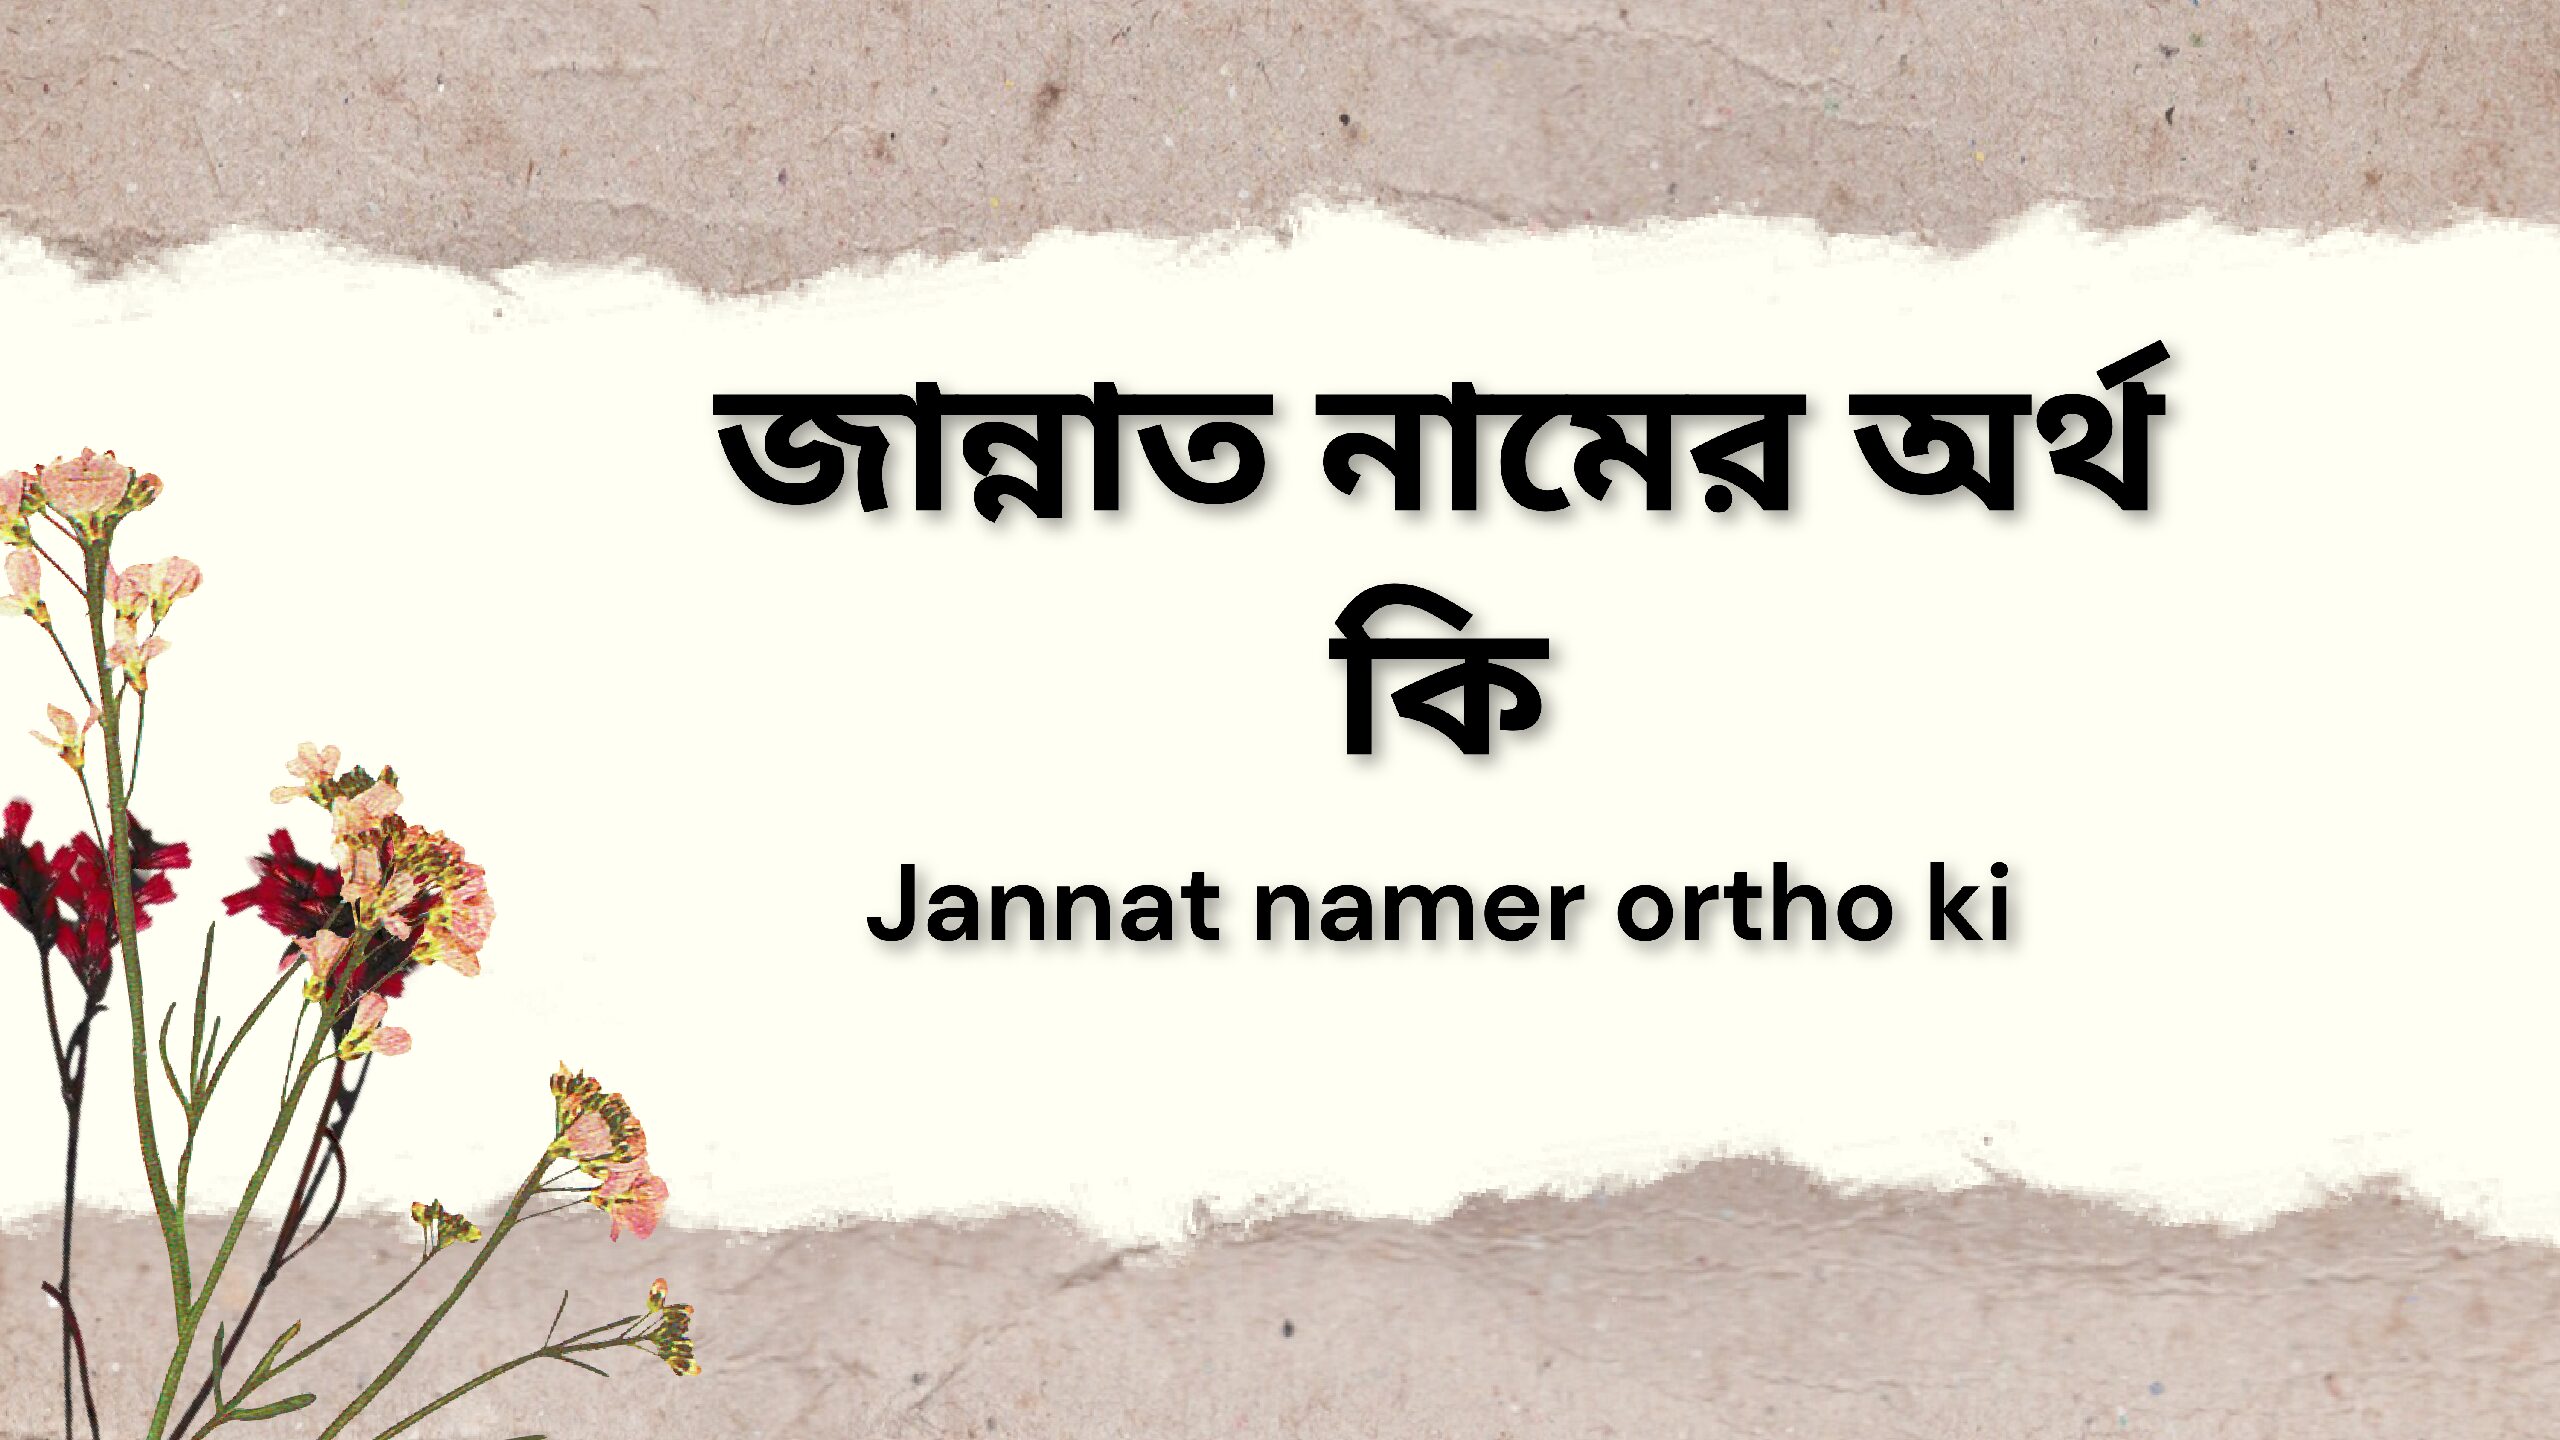 জান্নাত নামের অর্থ কি-Jannat namer ortho ki